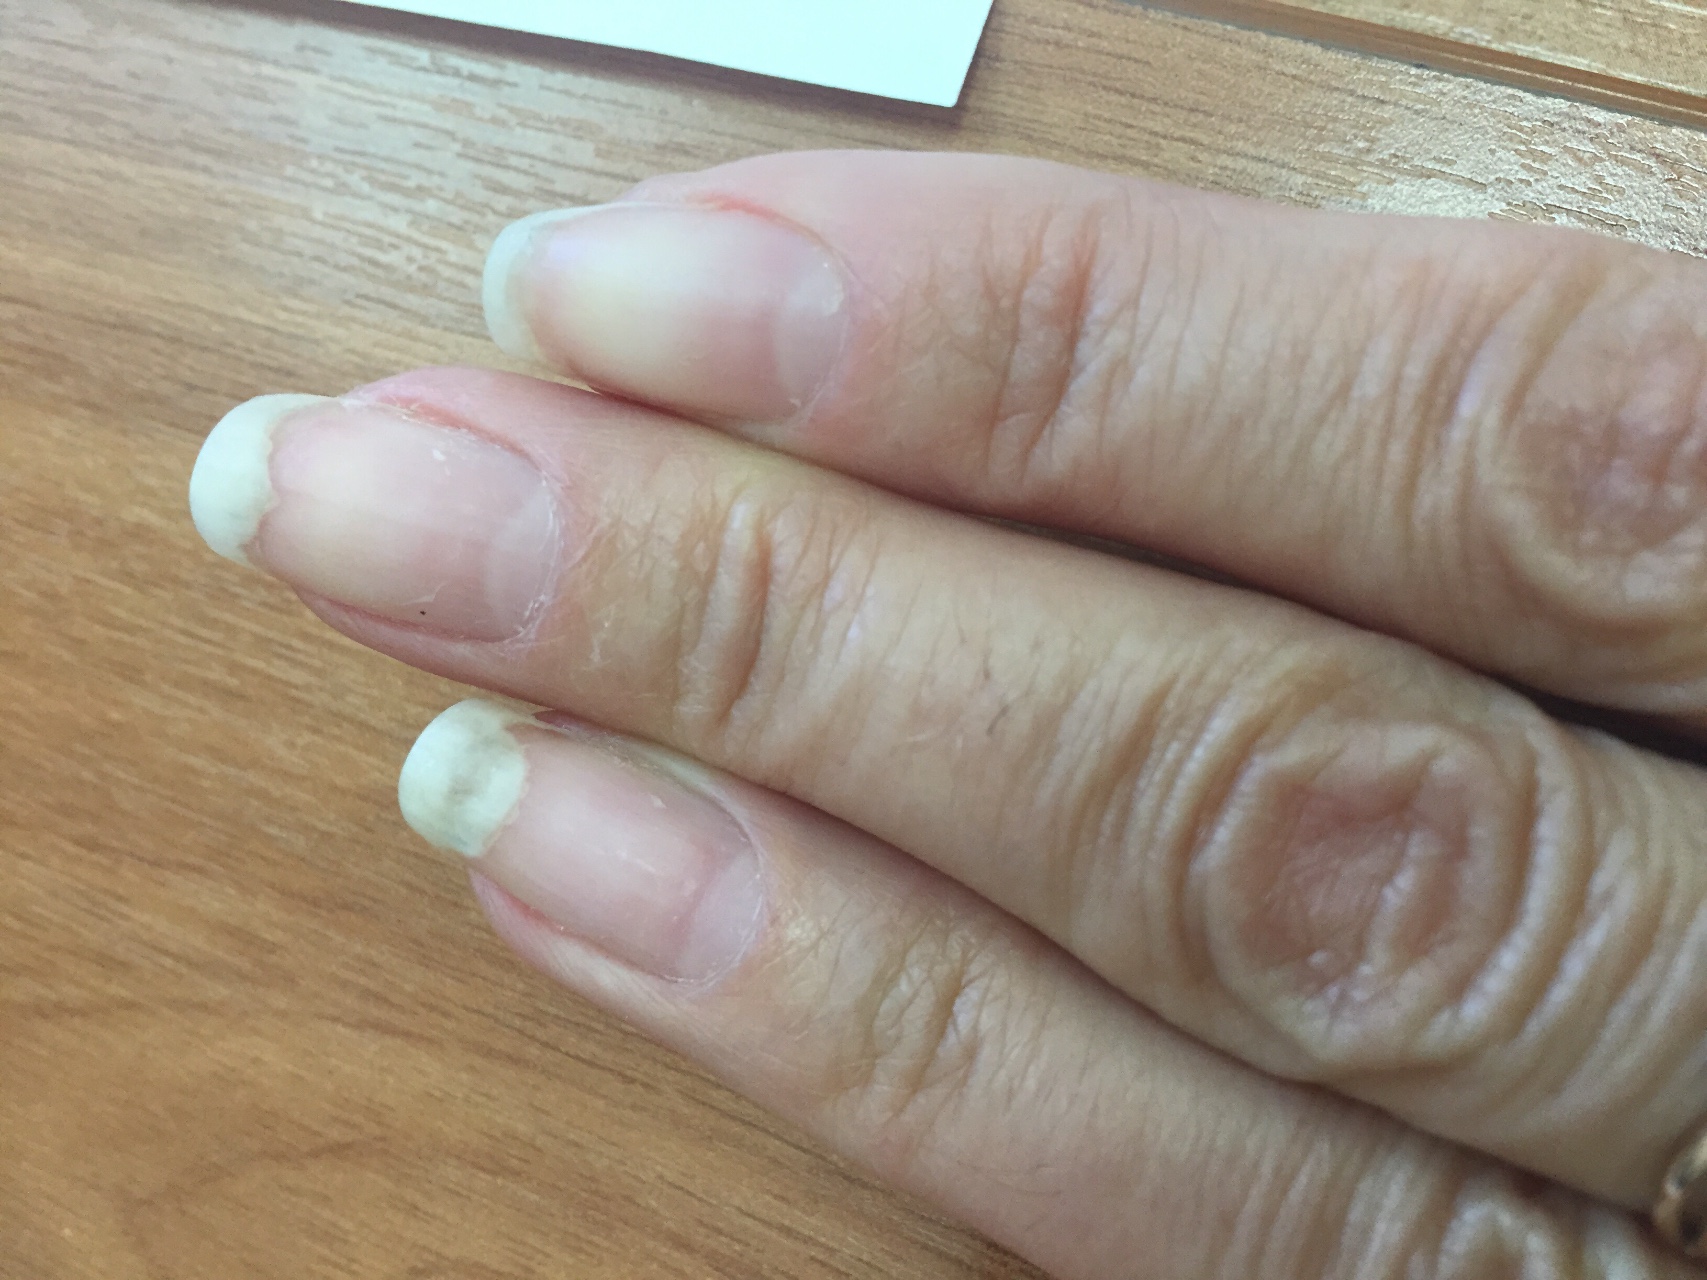 Скручиваются ногти что делать. Ониходистрофия - онихолизис.. Микотическая лейконихия. Онихолизис и белые пятна.